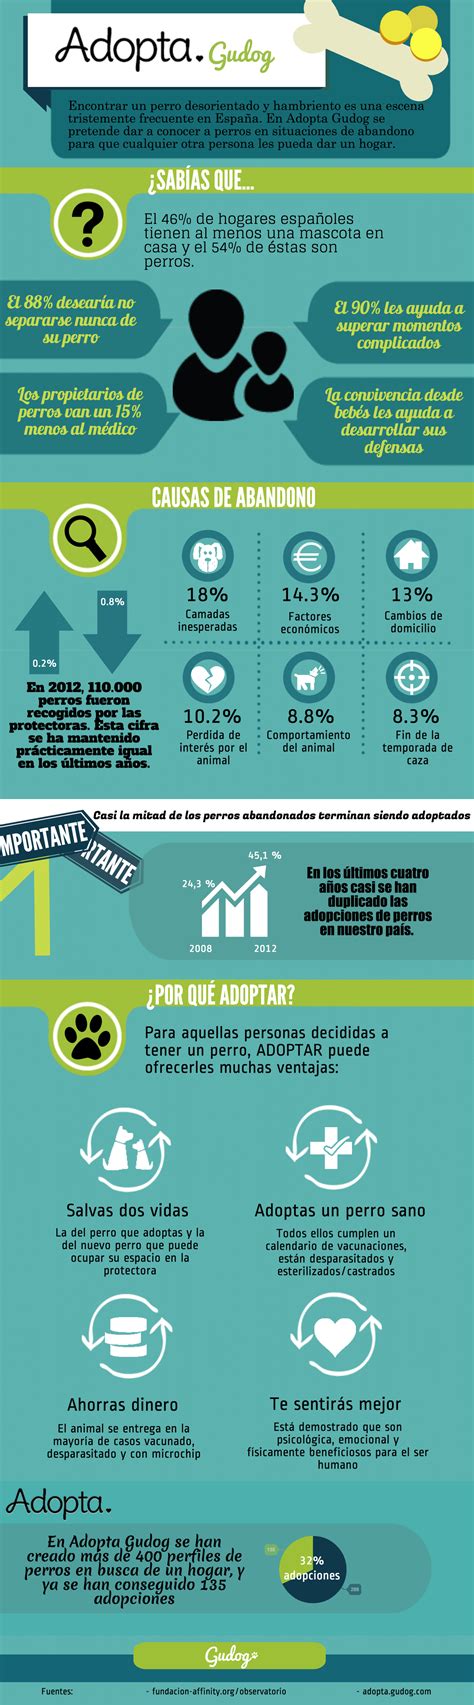 El abandono y la adopción de perros en nuestro país: algunos datos importantes. | Animal quotes ...